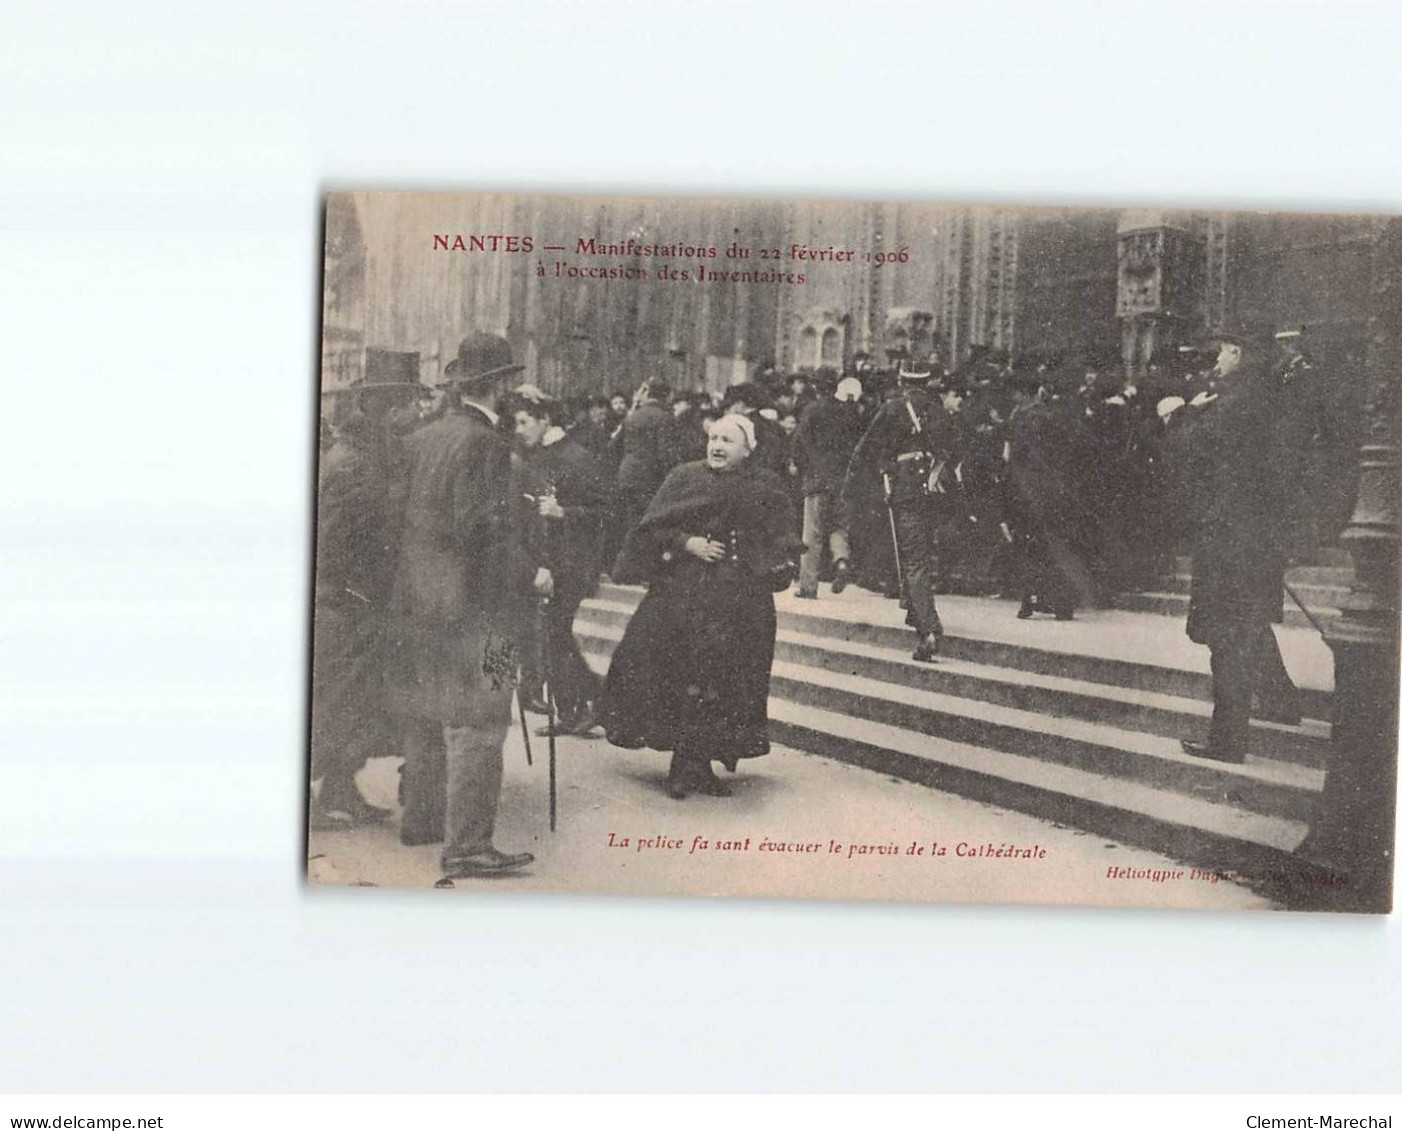 NANTES : Manifestations Du 22 Février 1906 à L'occasion Des Inventaires, La Police évacue Le Parvis - Très Bon état - Nantes